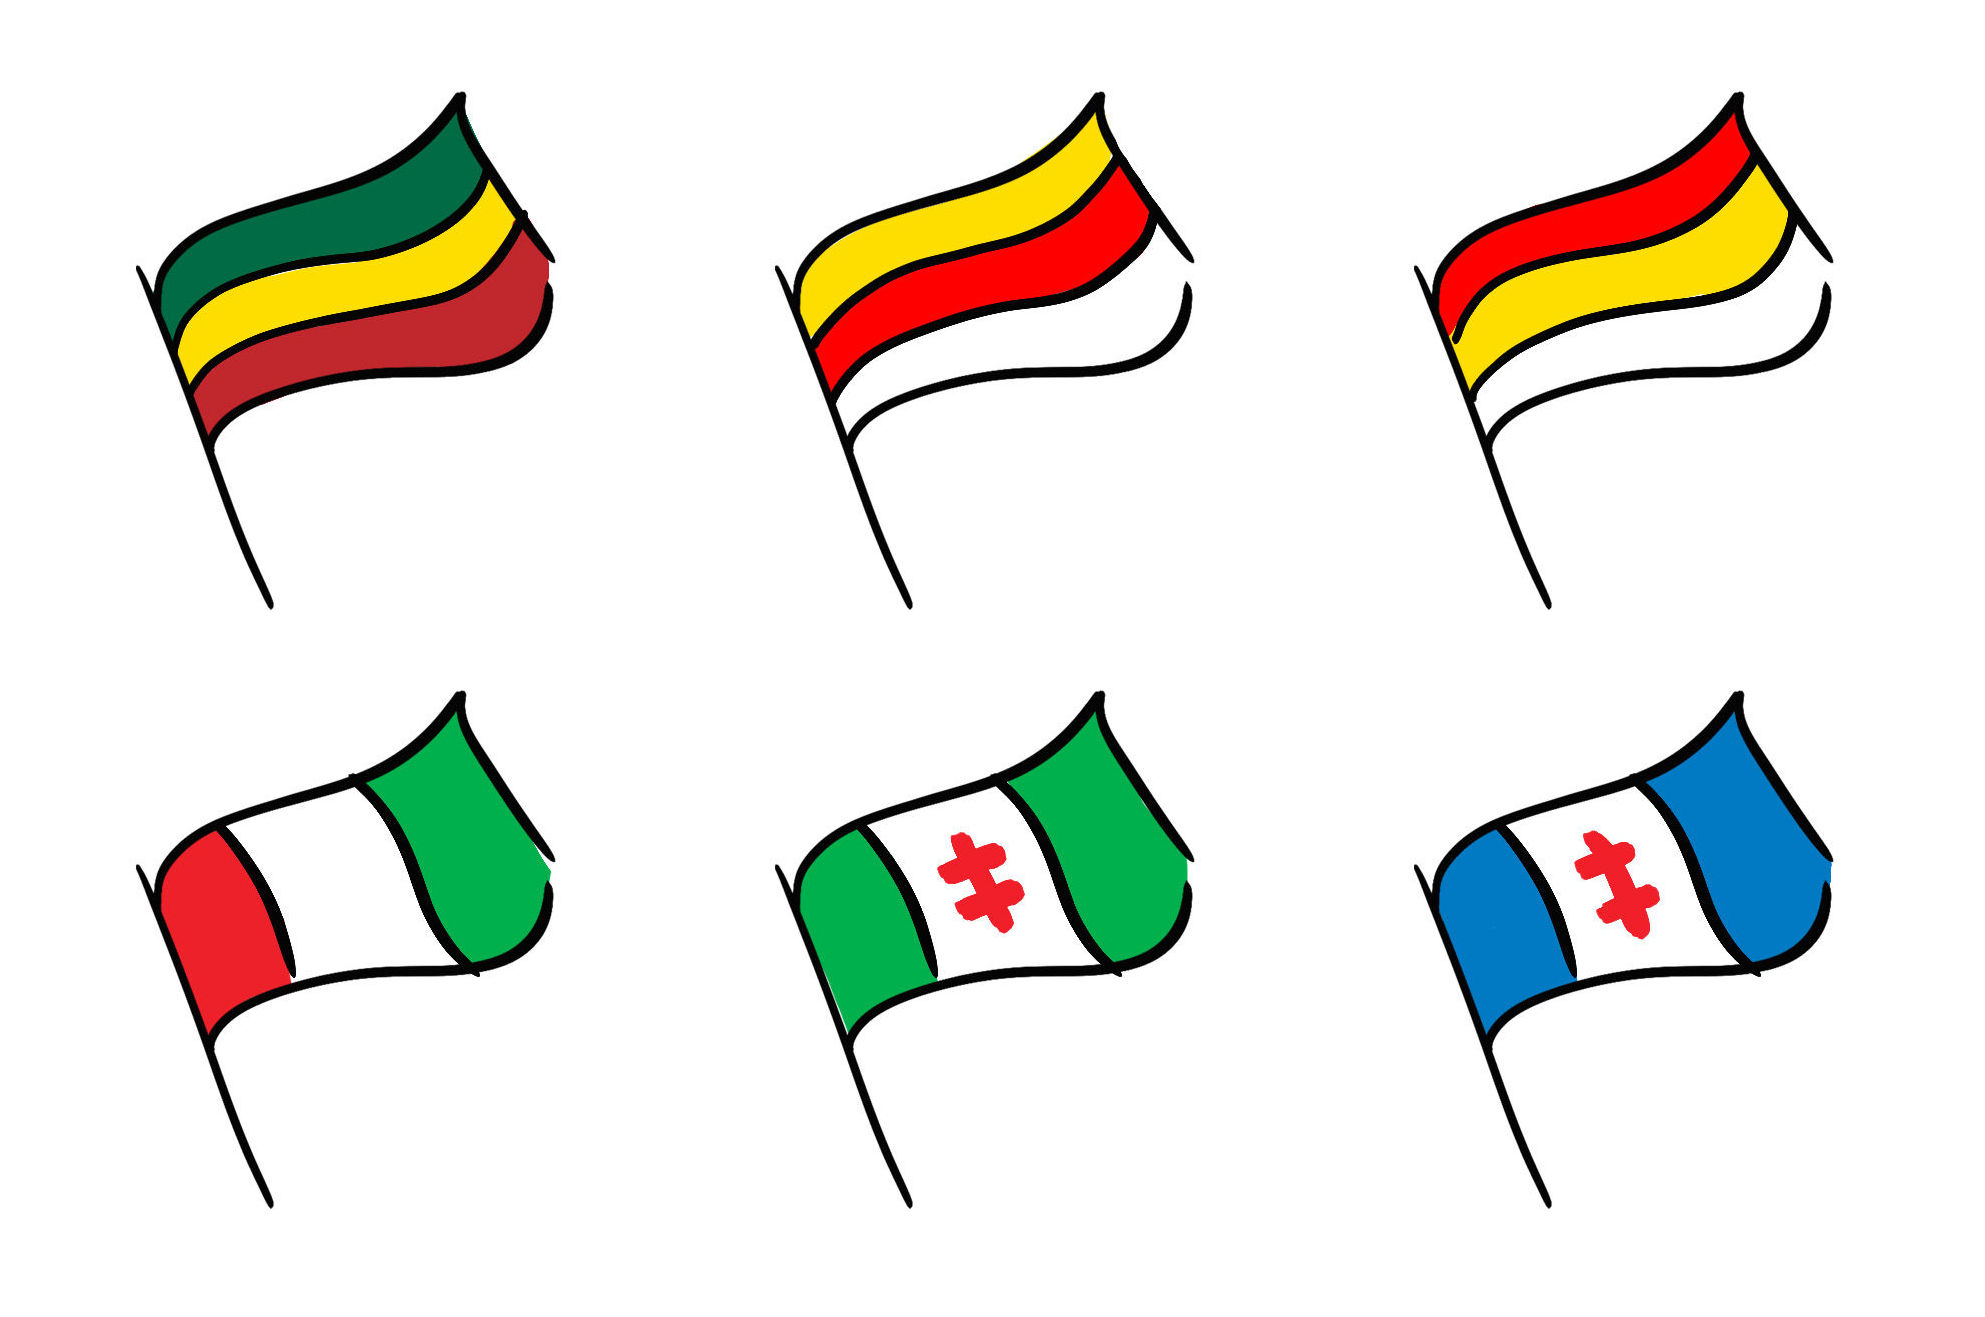 Варианты предложений по смене флага Литвы в 1936 году